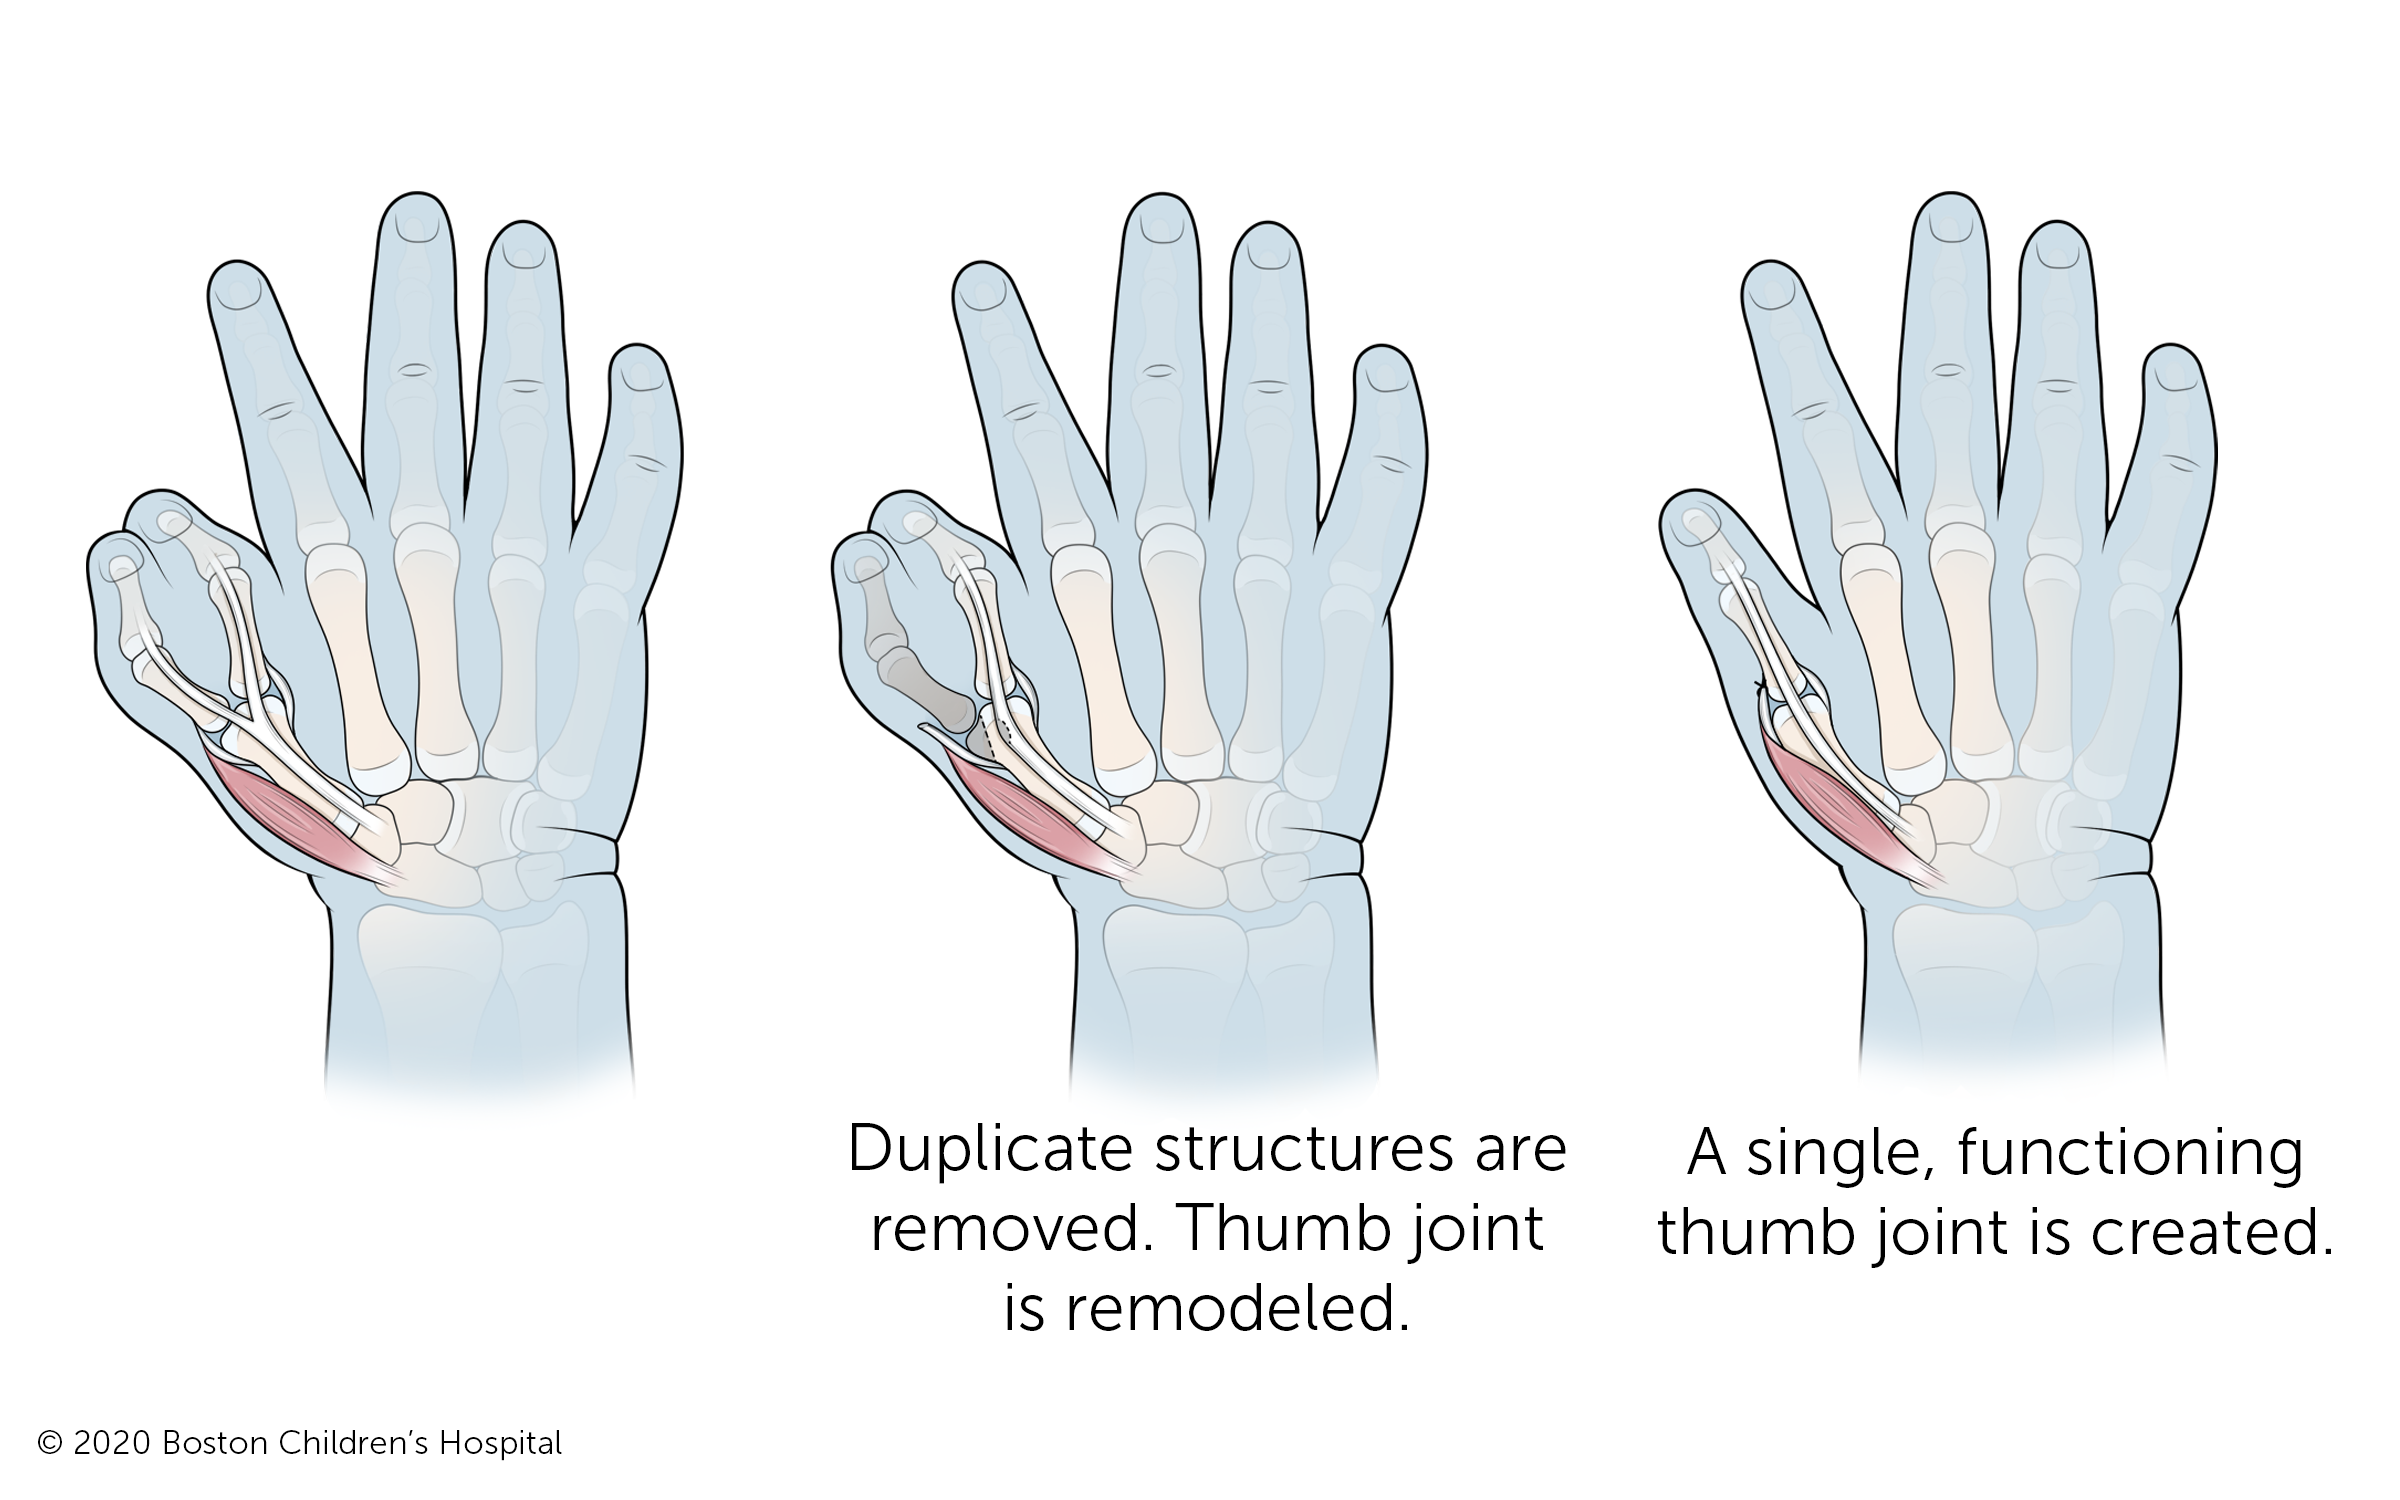 复制的骨头和其他结构被移除，之前两个骨头分叉的拇指关节被重塑，形成一个单独的、有功能的拇指和拇指关节。